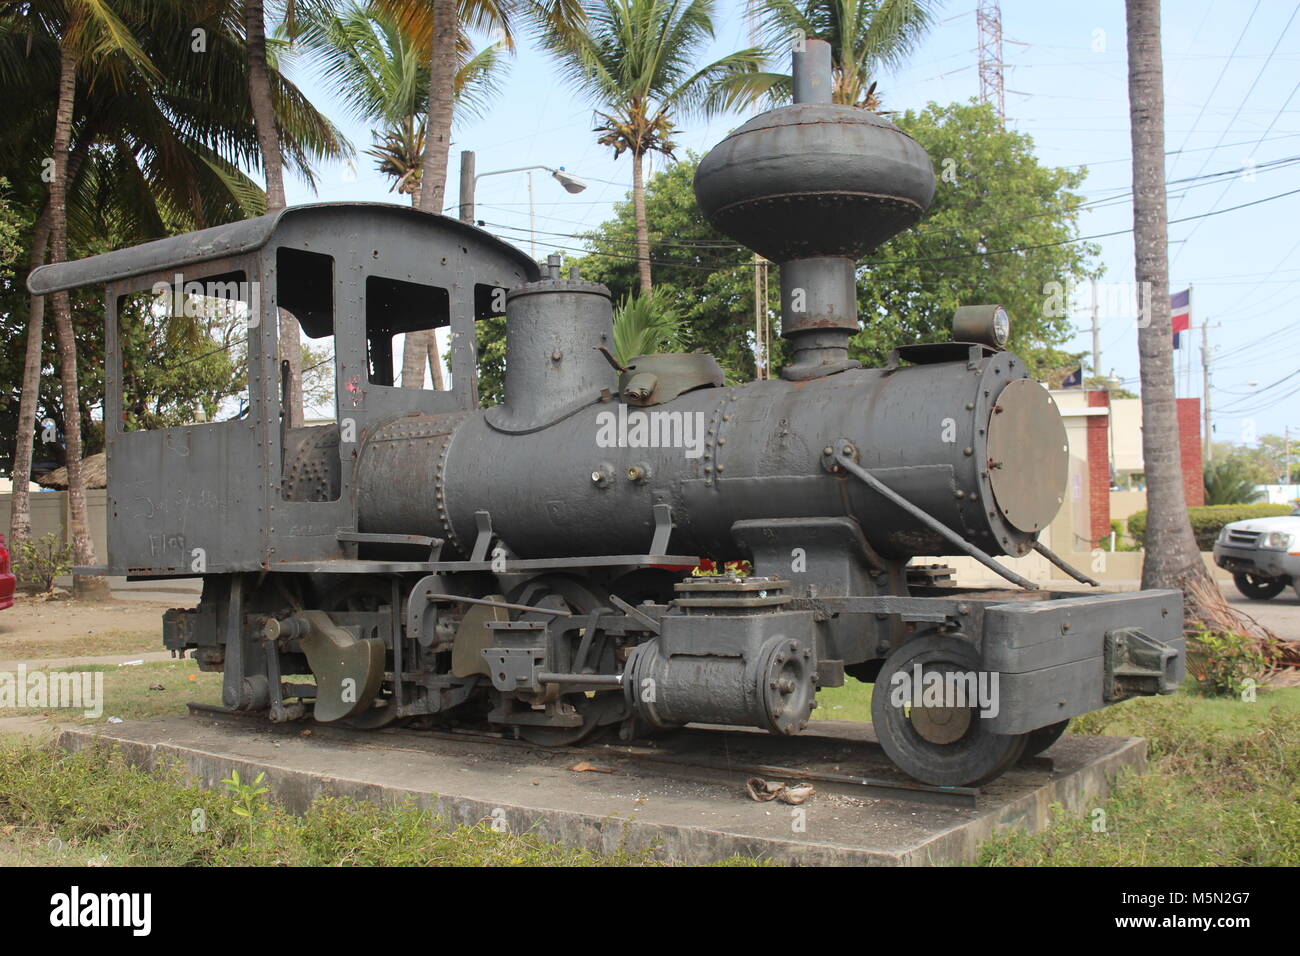 tren antiguo de la ciudad de puerto plata Stock Photo